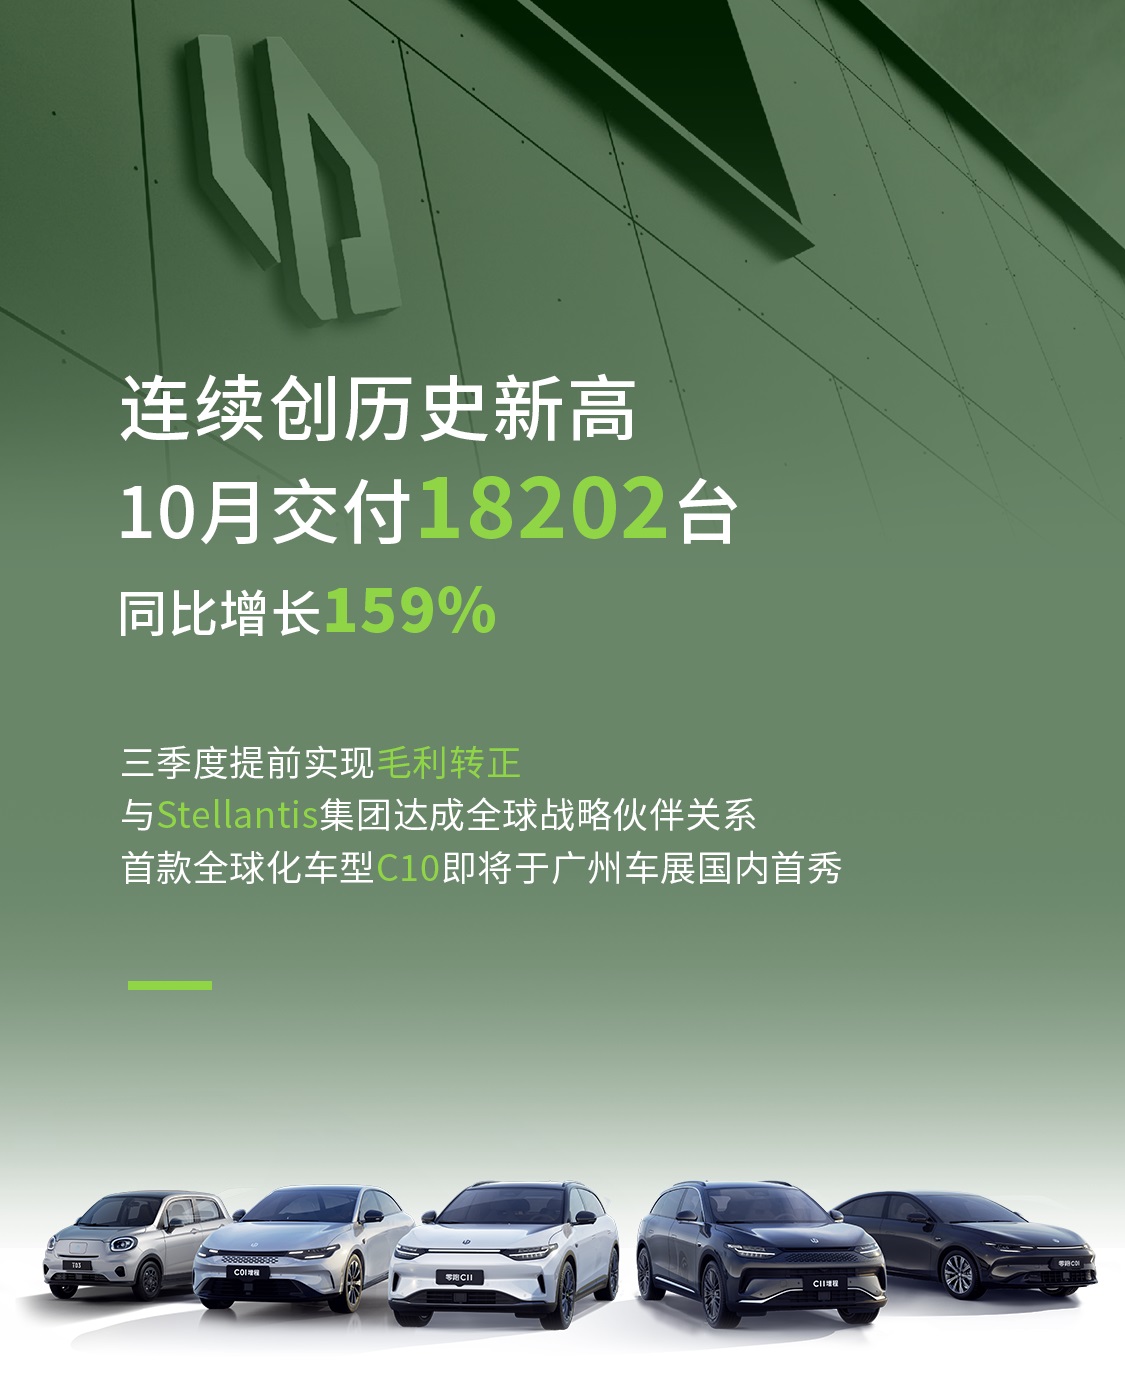 零跑汽车10月交付1.82万辆 携手Stellantis集团发力海外市场